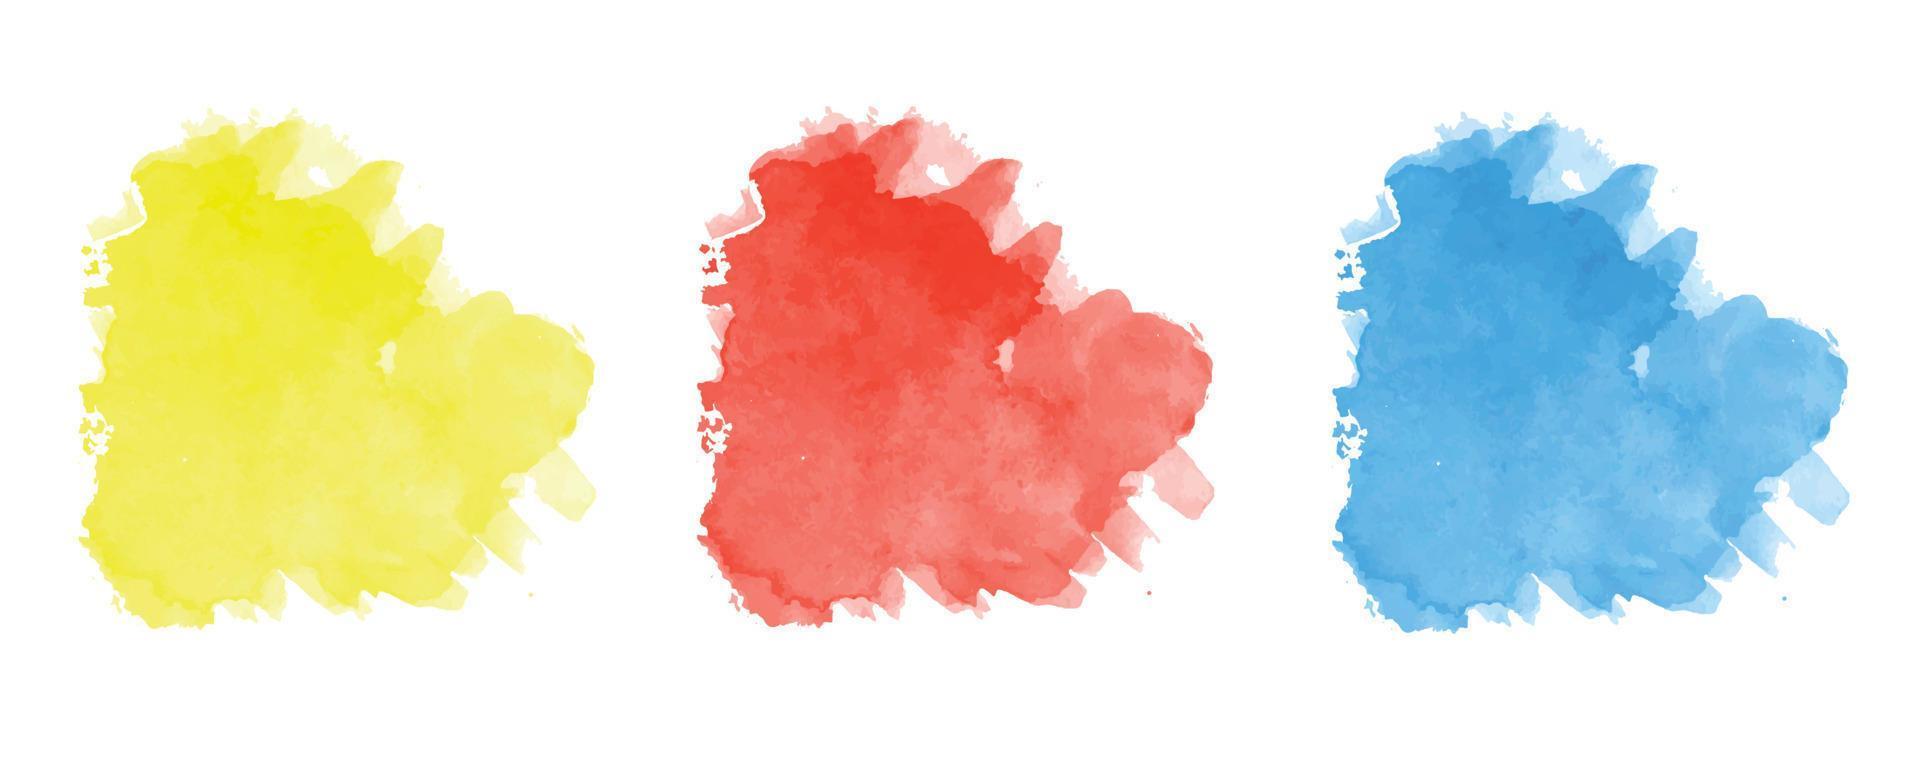 abstraktes modernes handgemaltes Design mit Pinselstrich blau, gelb, rote Wolke, isoliert auf weiß. Vektor verwendet als dekorative Designkarte, Fahne, Plakat, Abdeckung, Broschüre